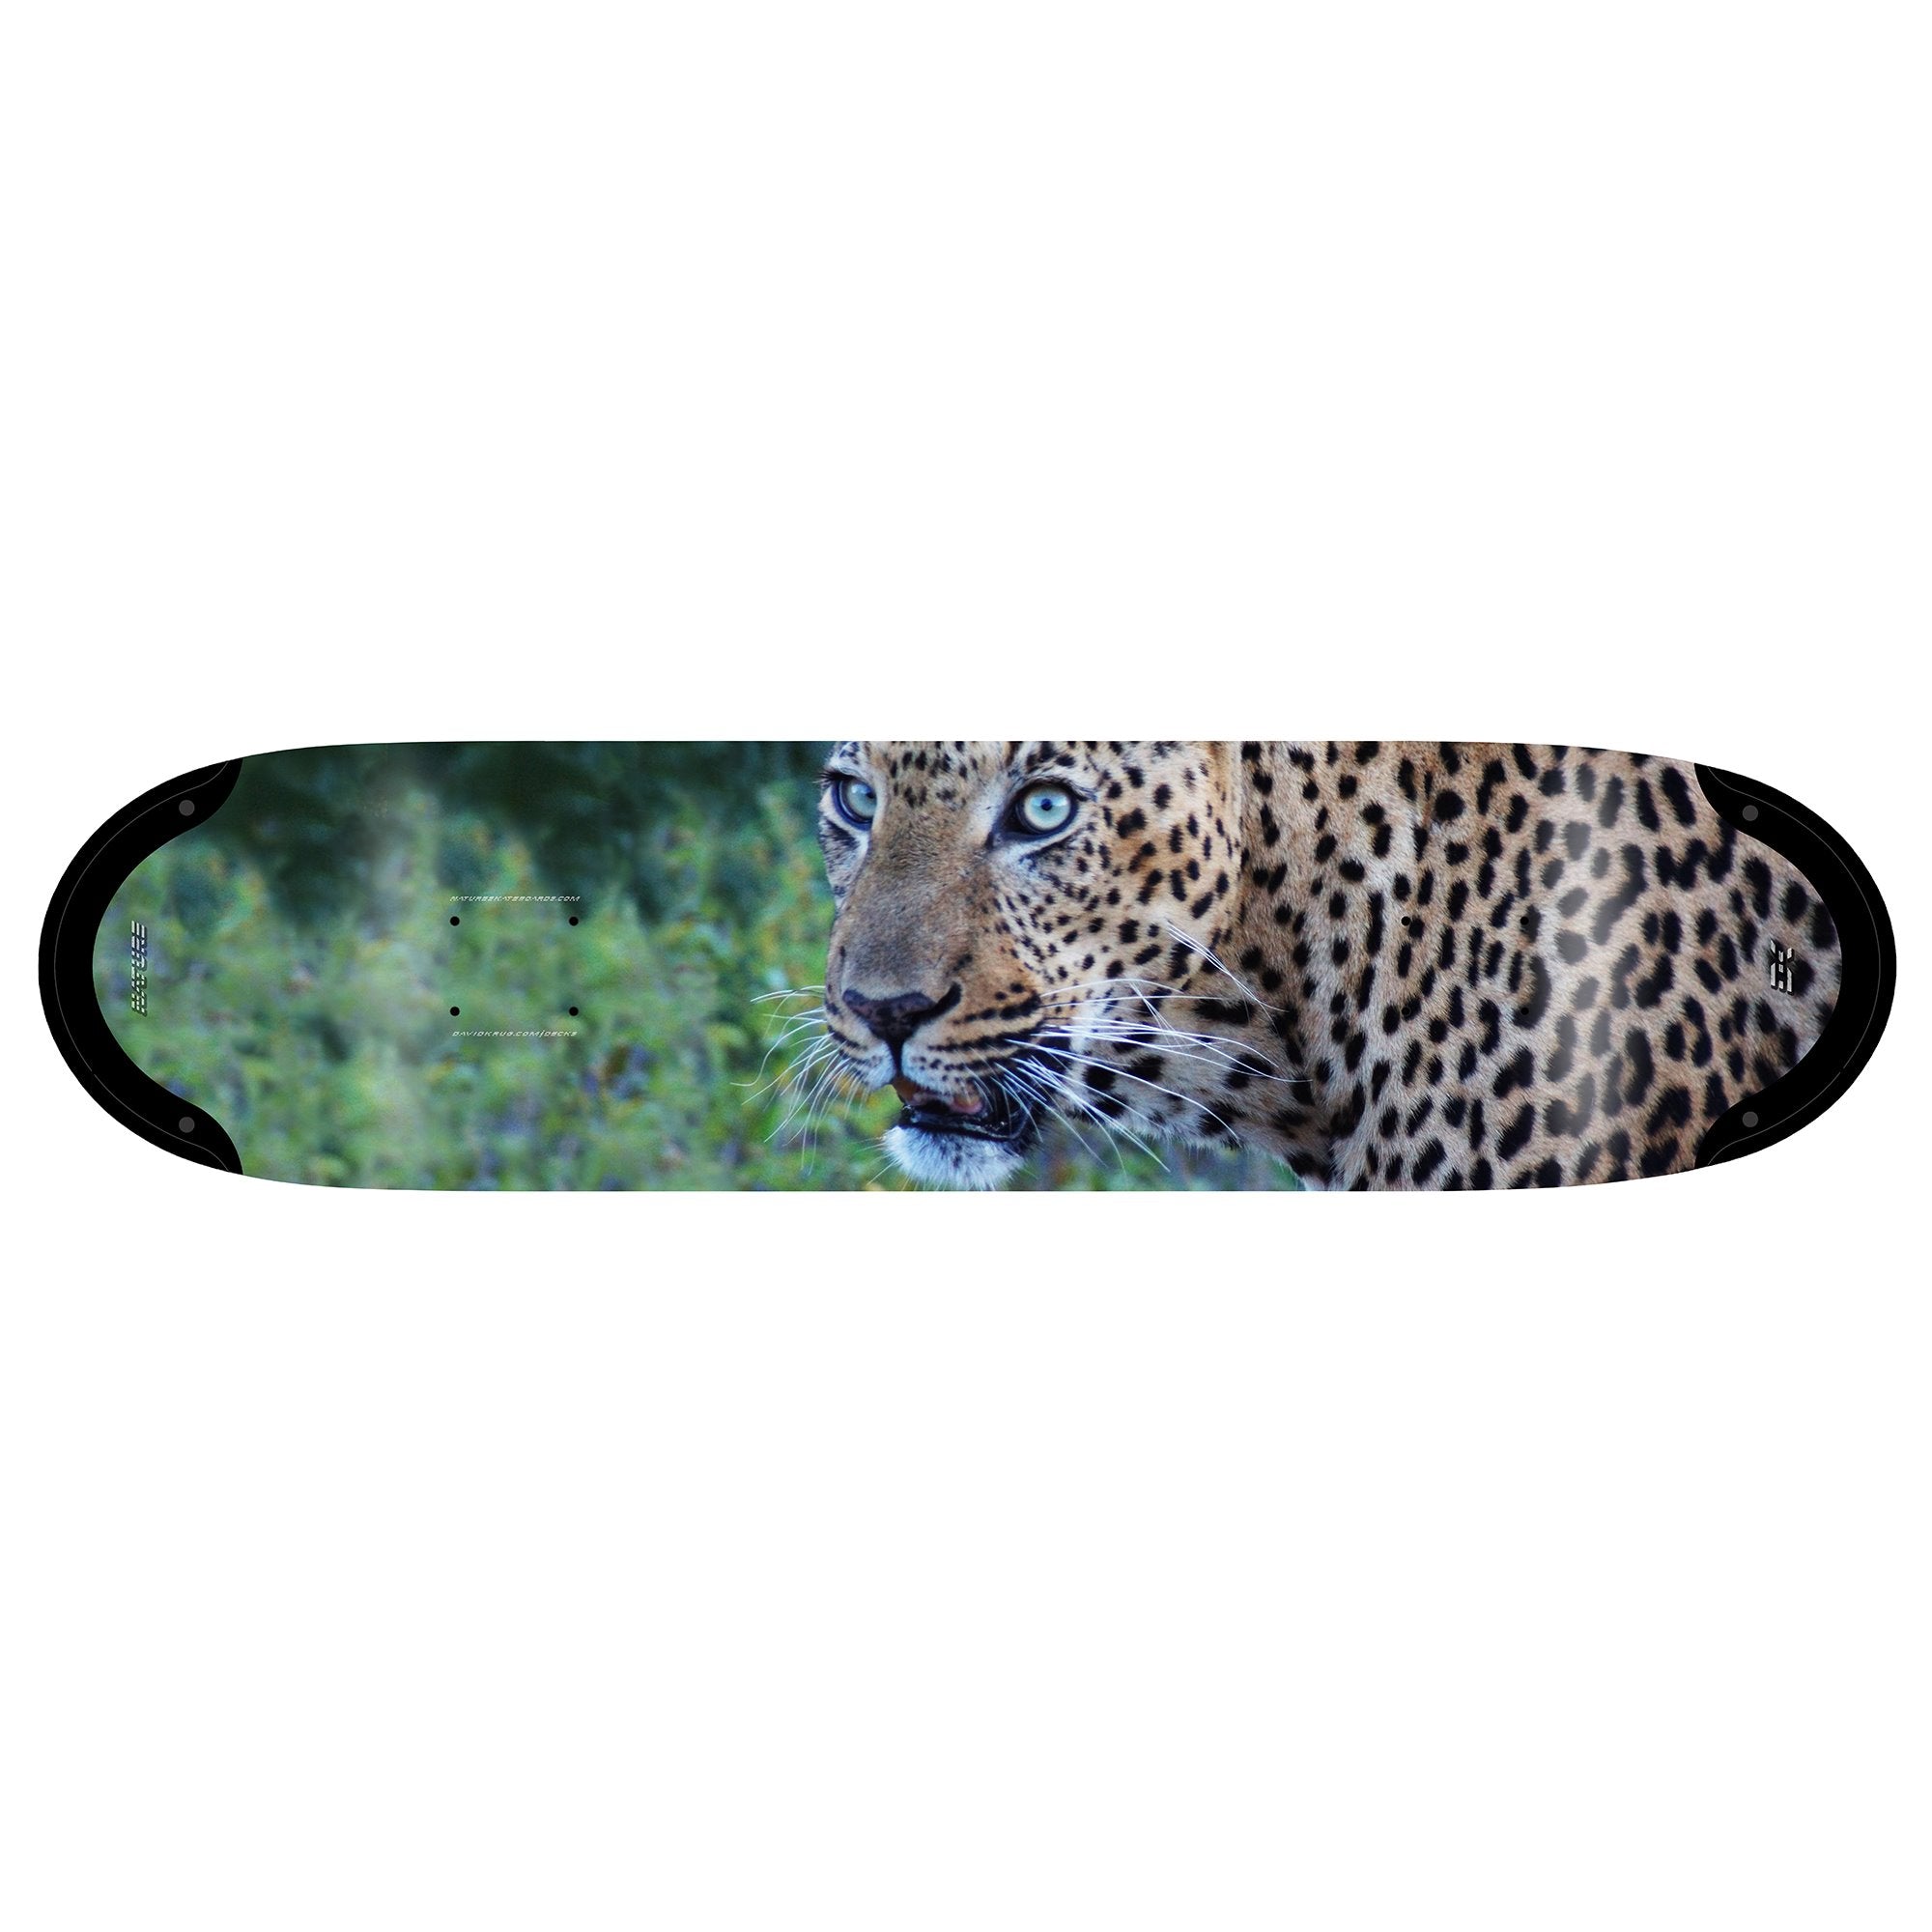 Nature Skateboards Leopard Deck I on David Krug Online Store